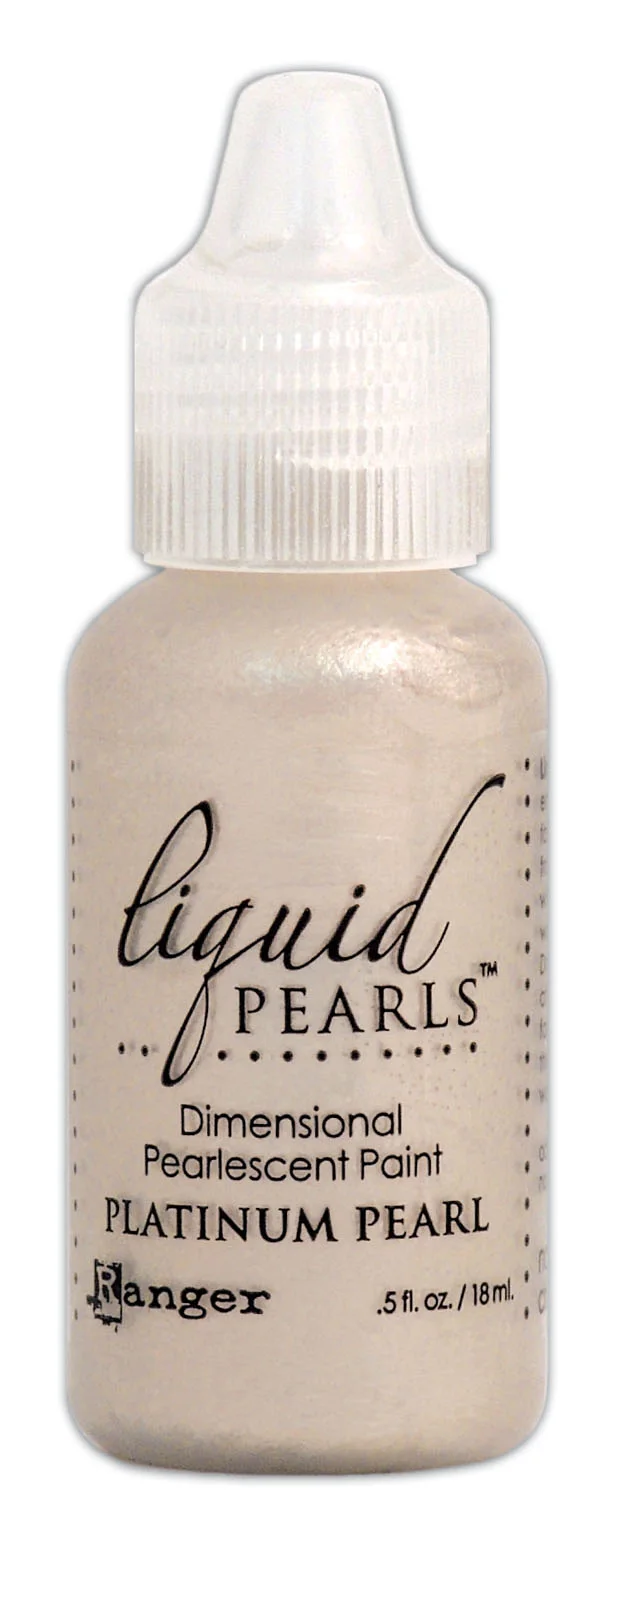 Ranger • Liquid pearls 14g Platinum Pearl